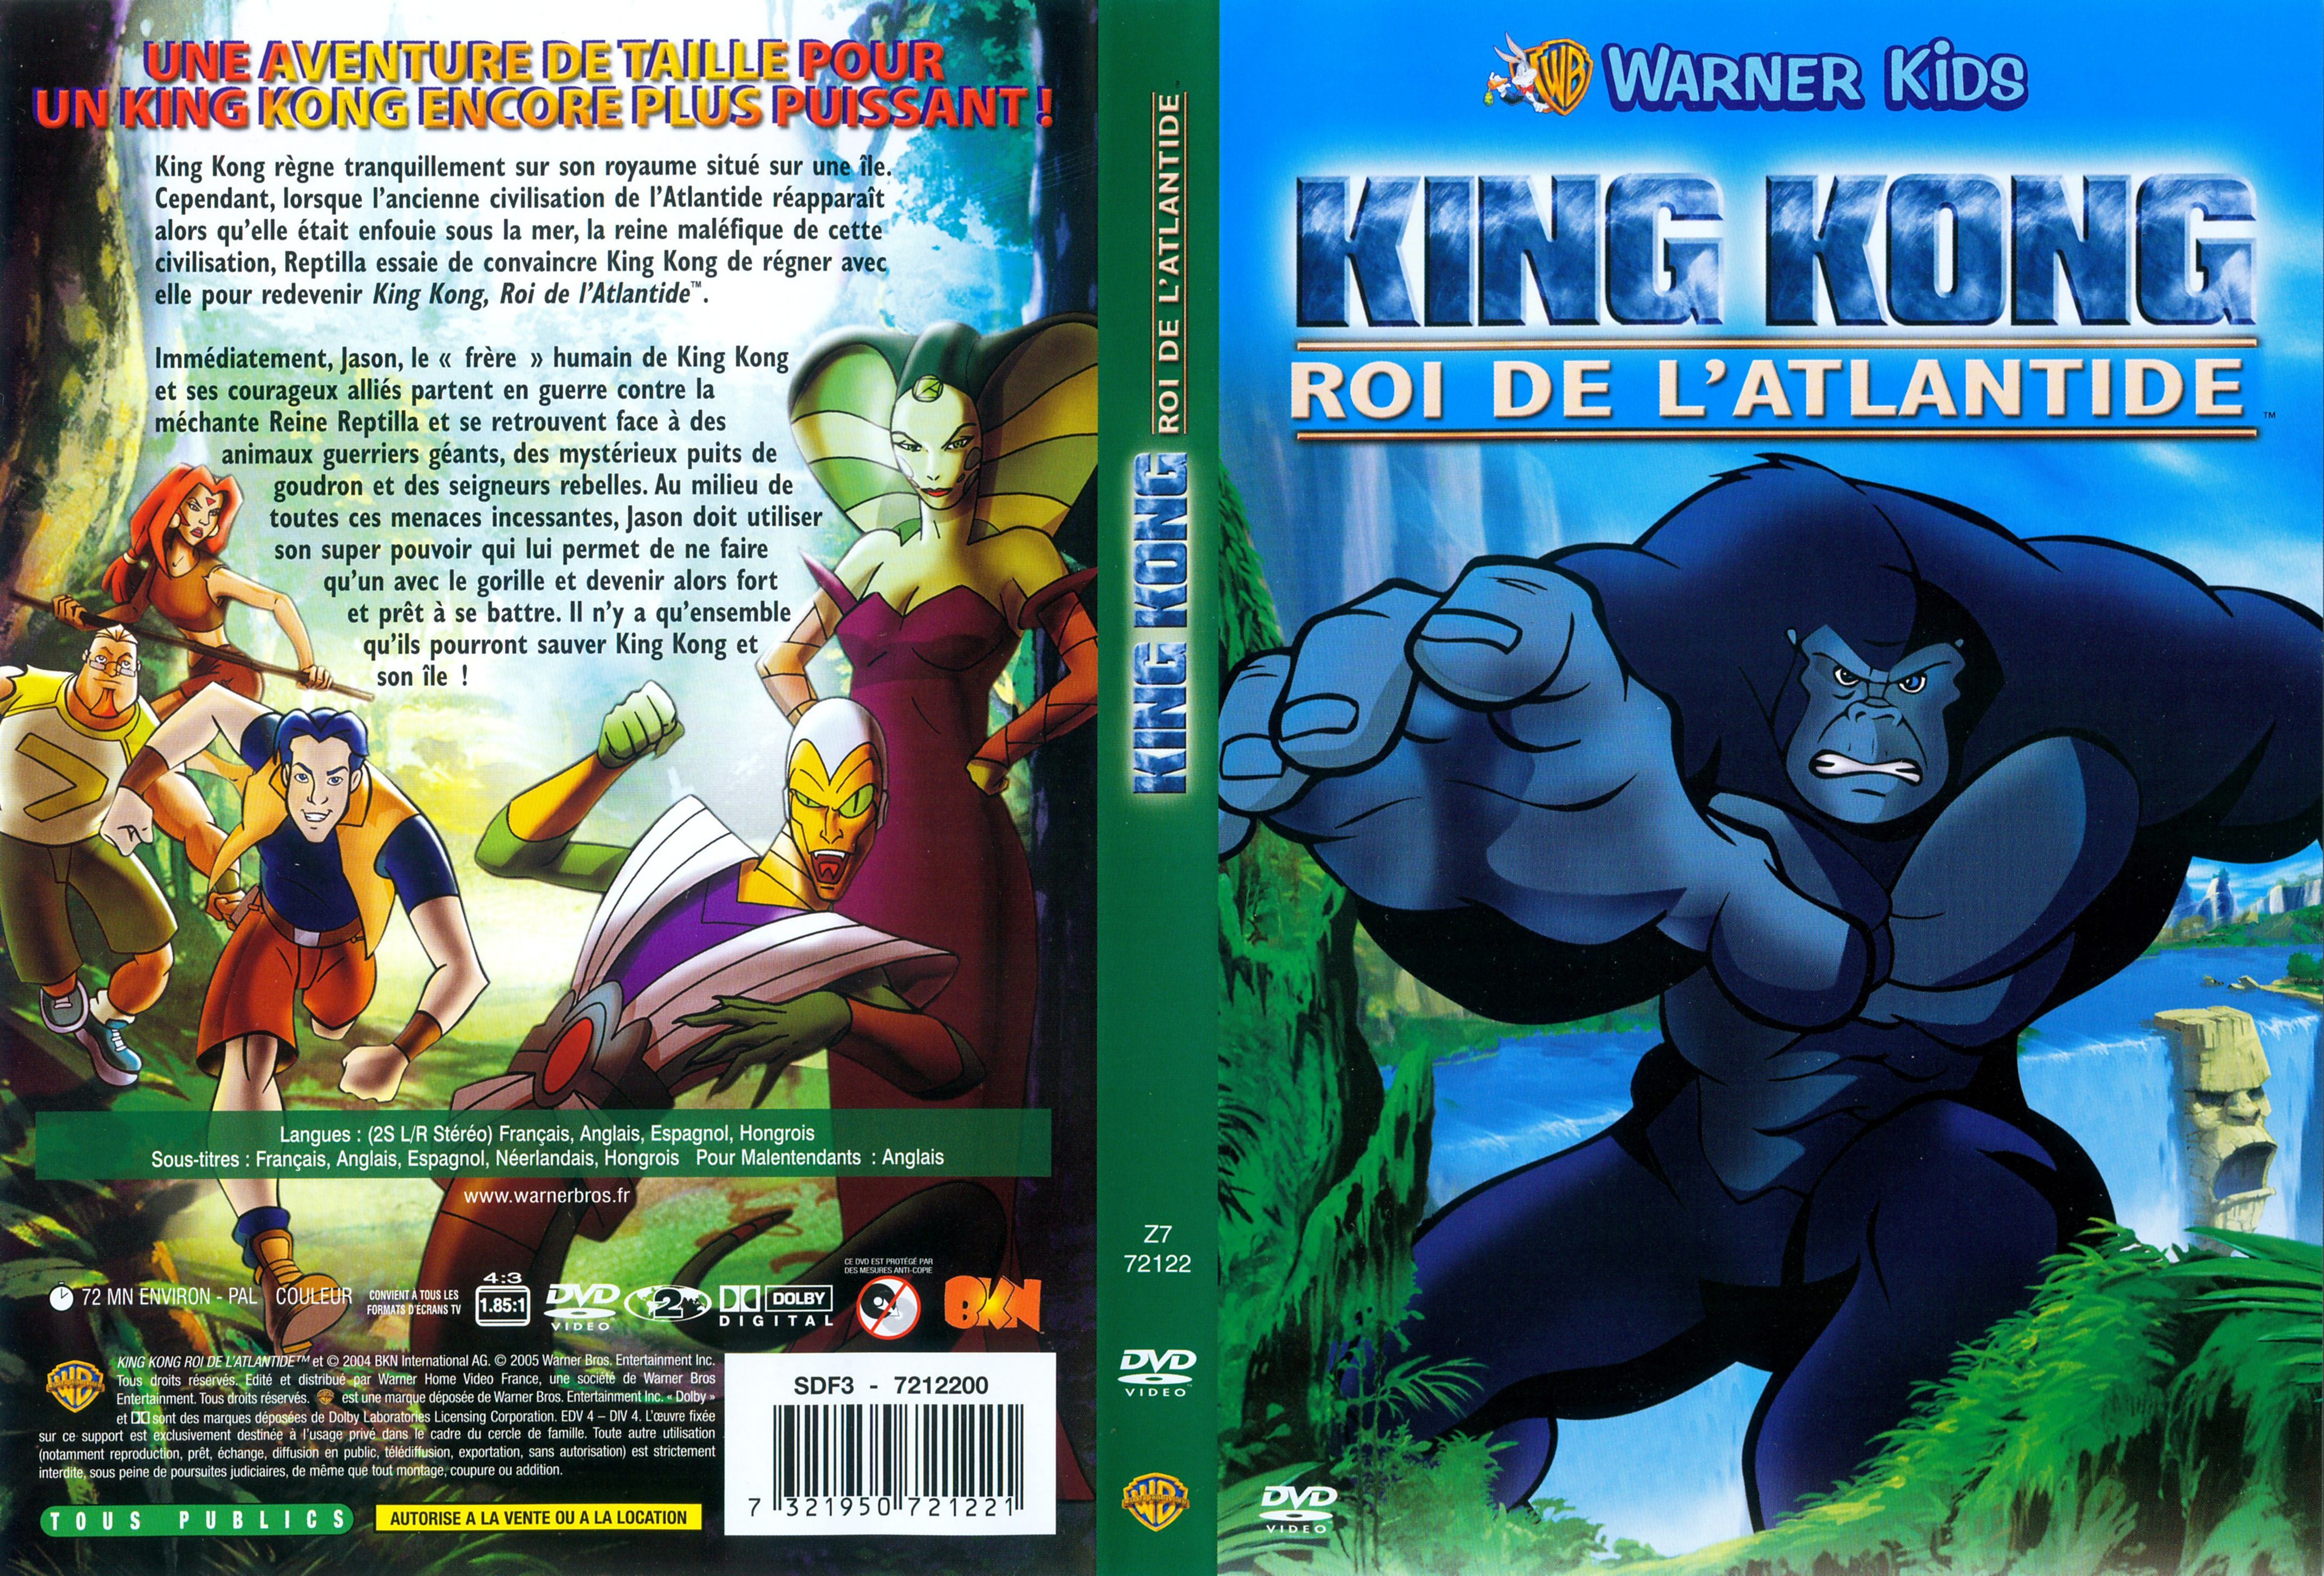 Jaquette DVD King Kong Roi de l